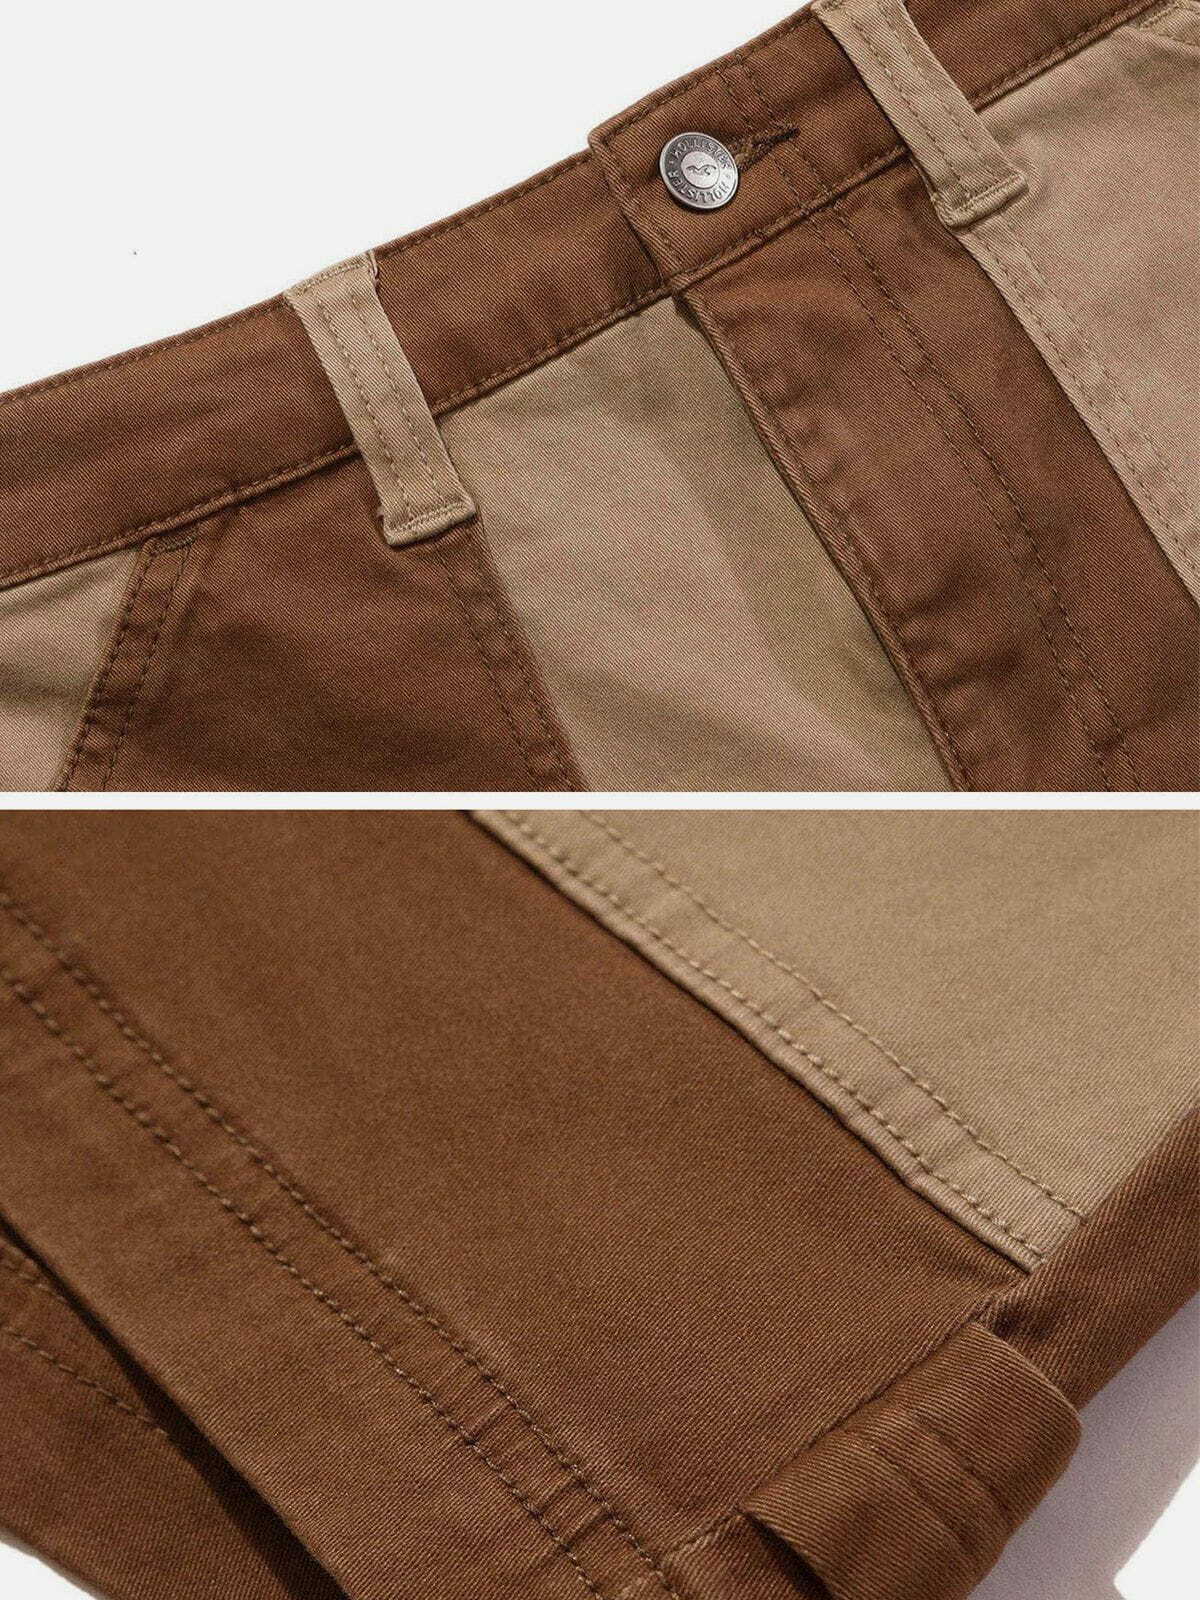 patchwork retro denim shorts edgy streetwear essential 4385